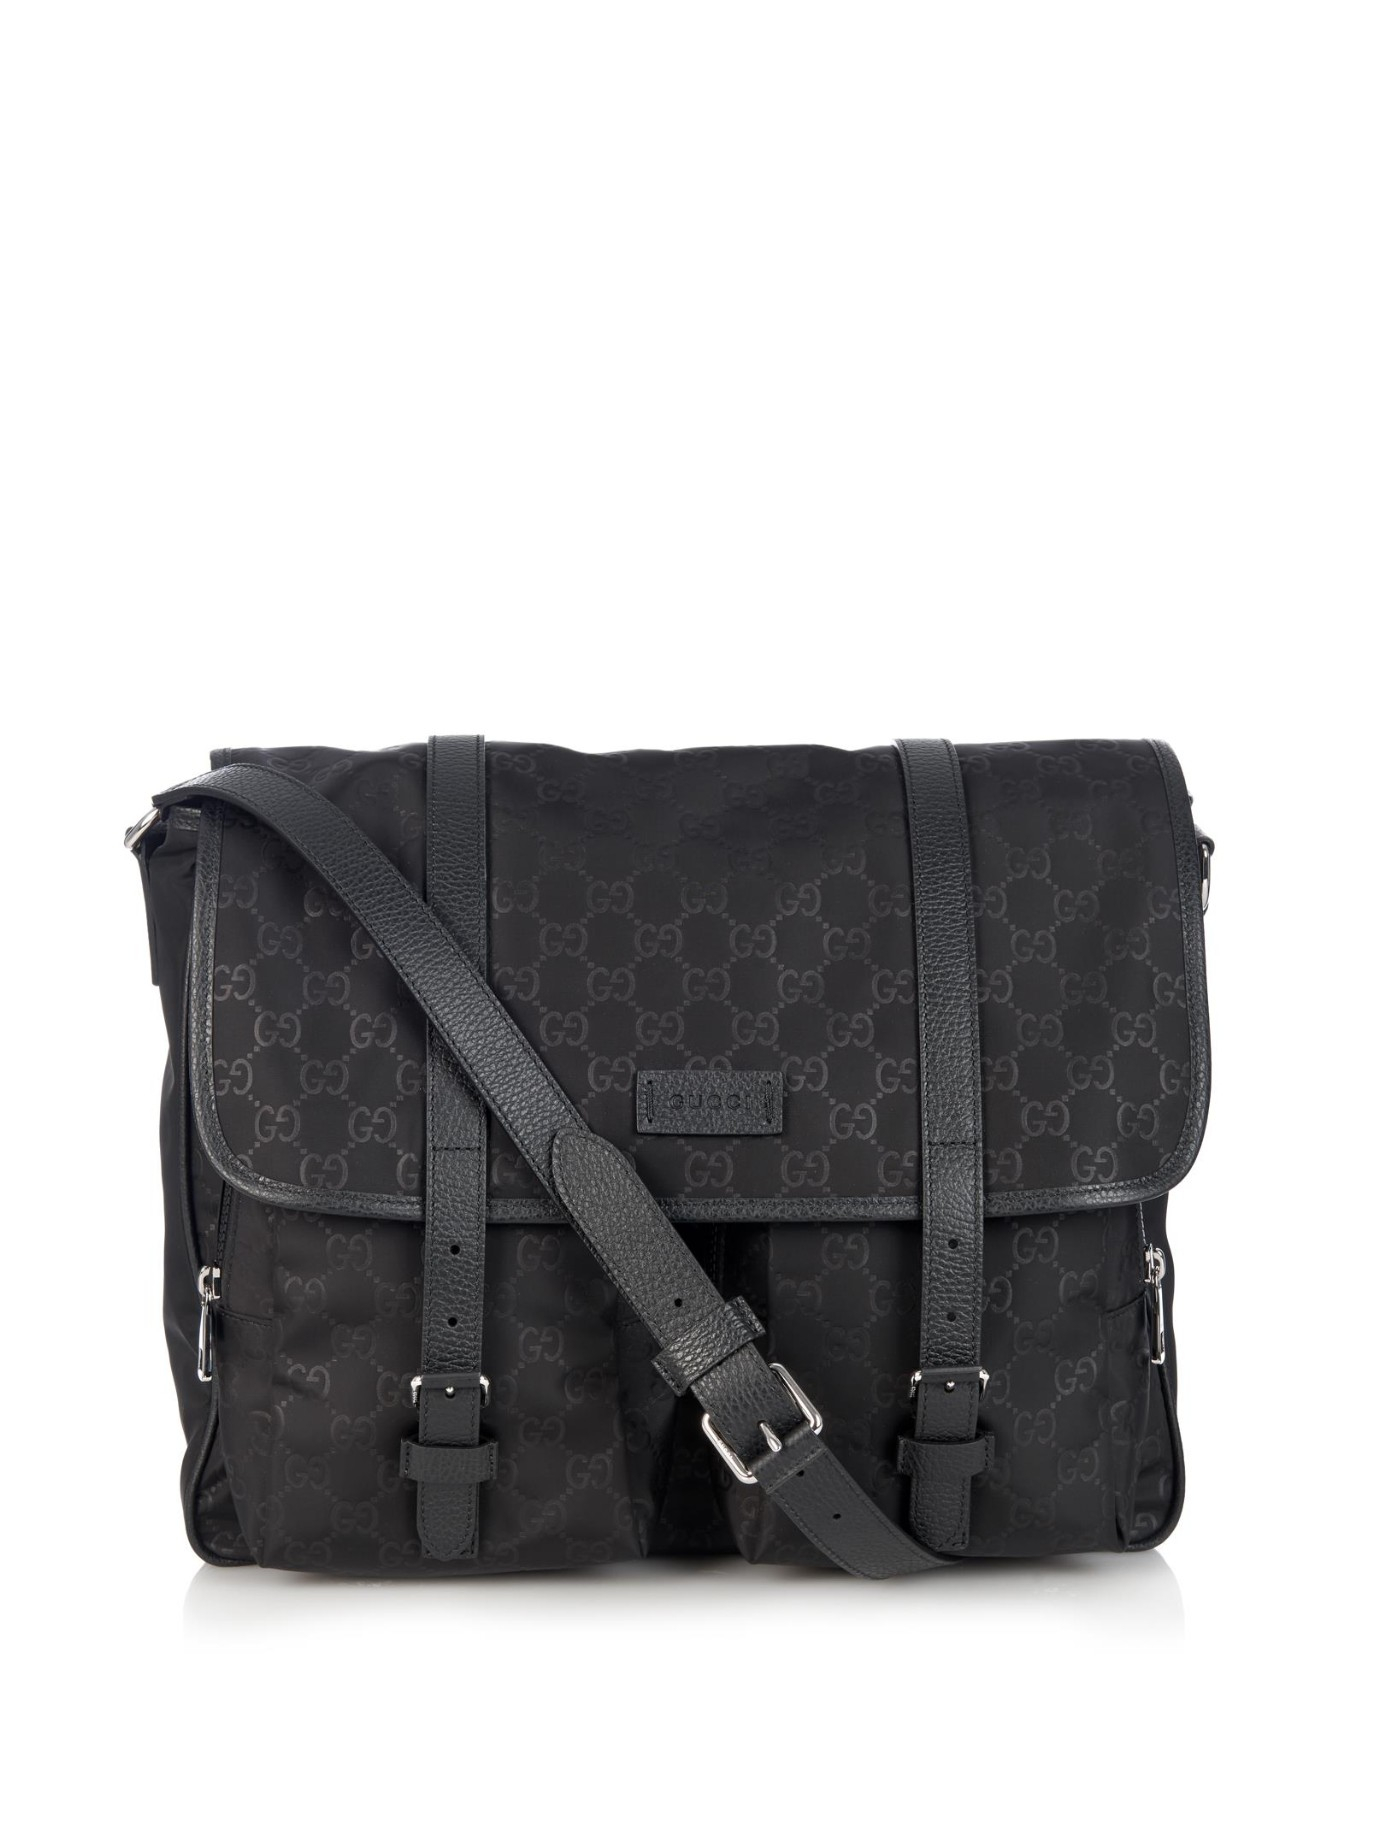 Gucci Monogram Gg Nylon Messenger Bag in Black for Men | Lyst